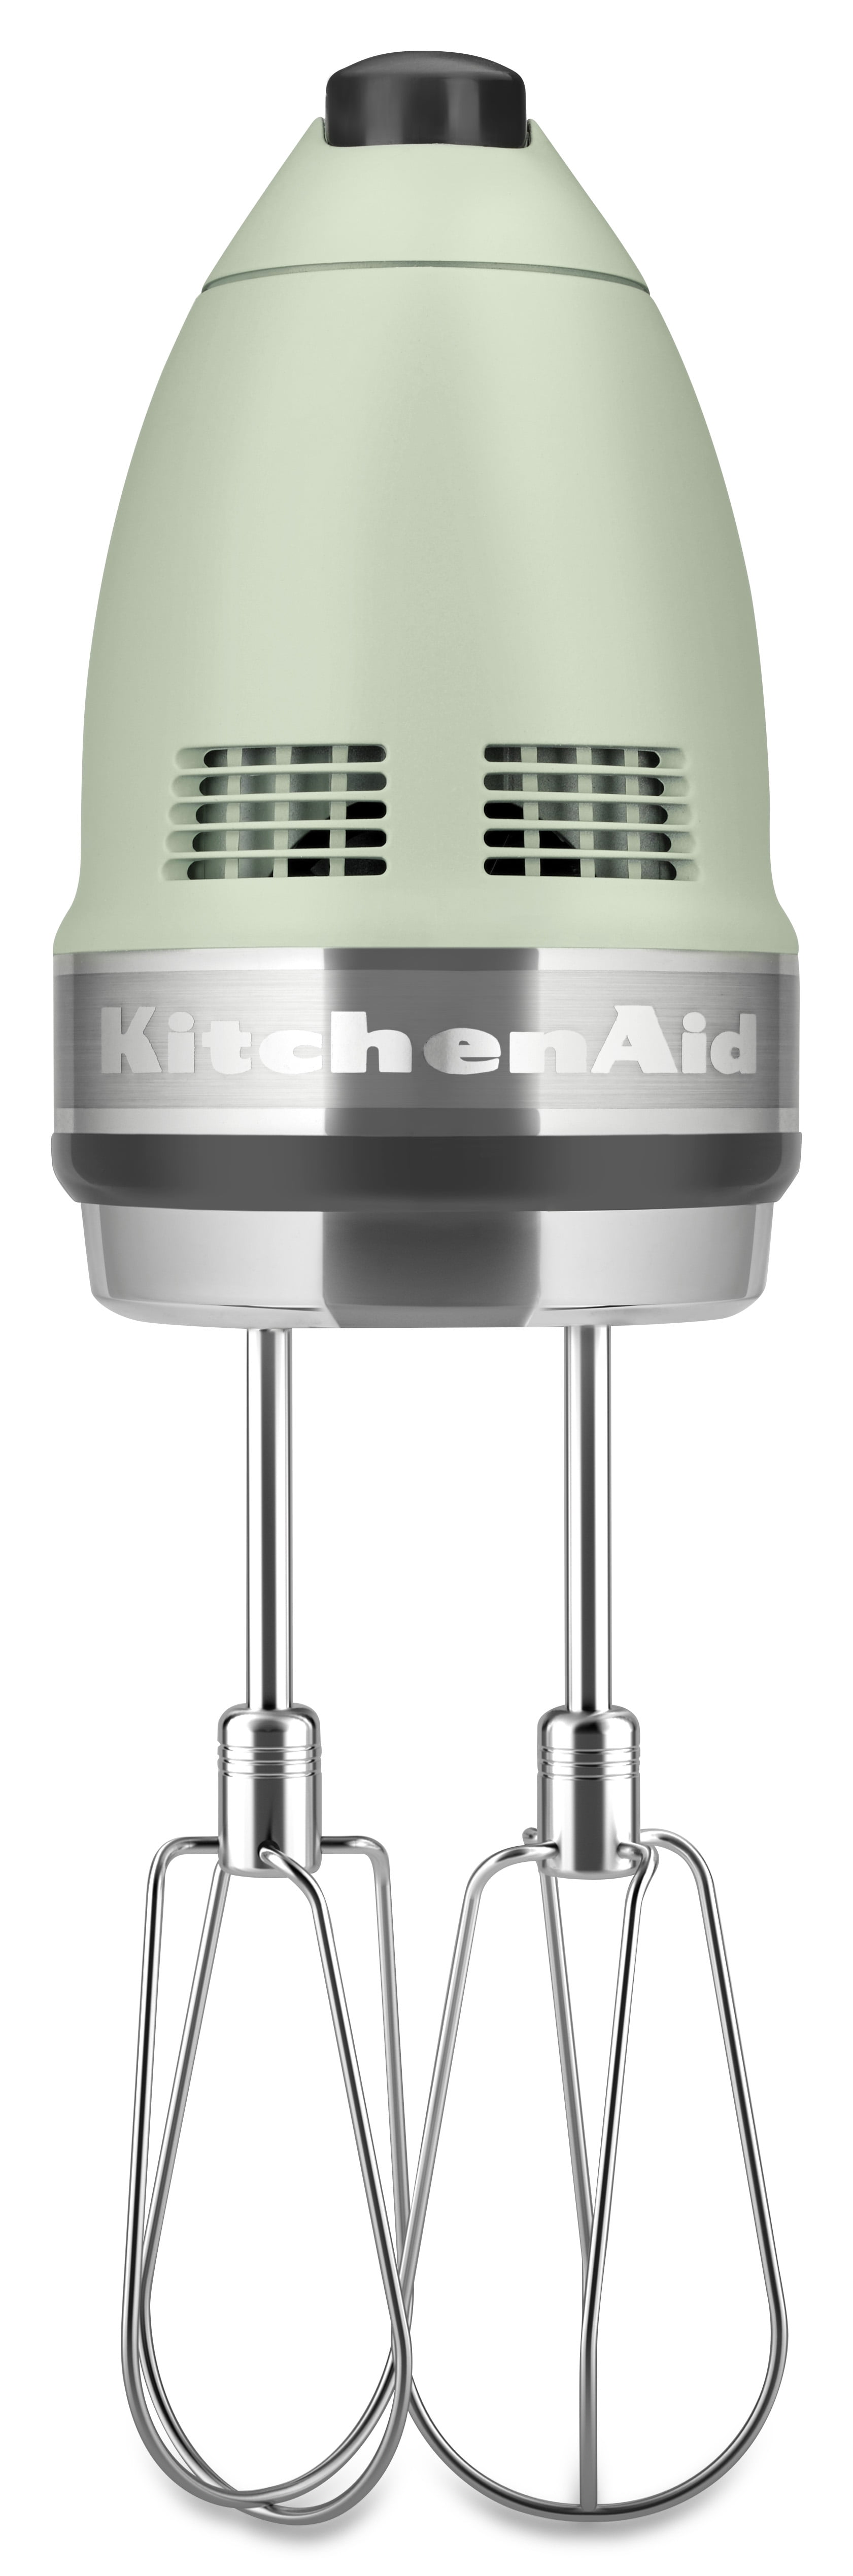 KitchenAid Green Apple Digital Hand Mixer 9 Speed W/ 2 SS Turbo Beaters